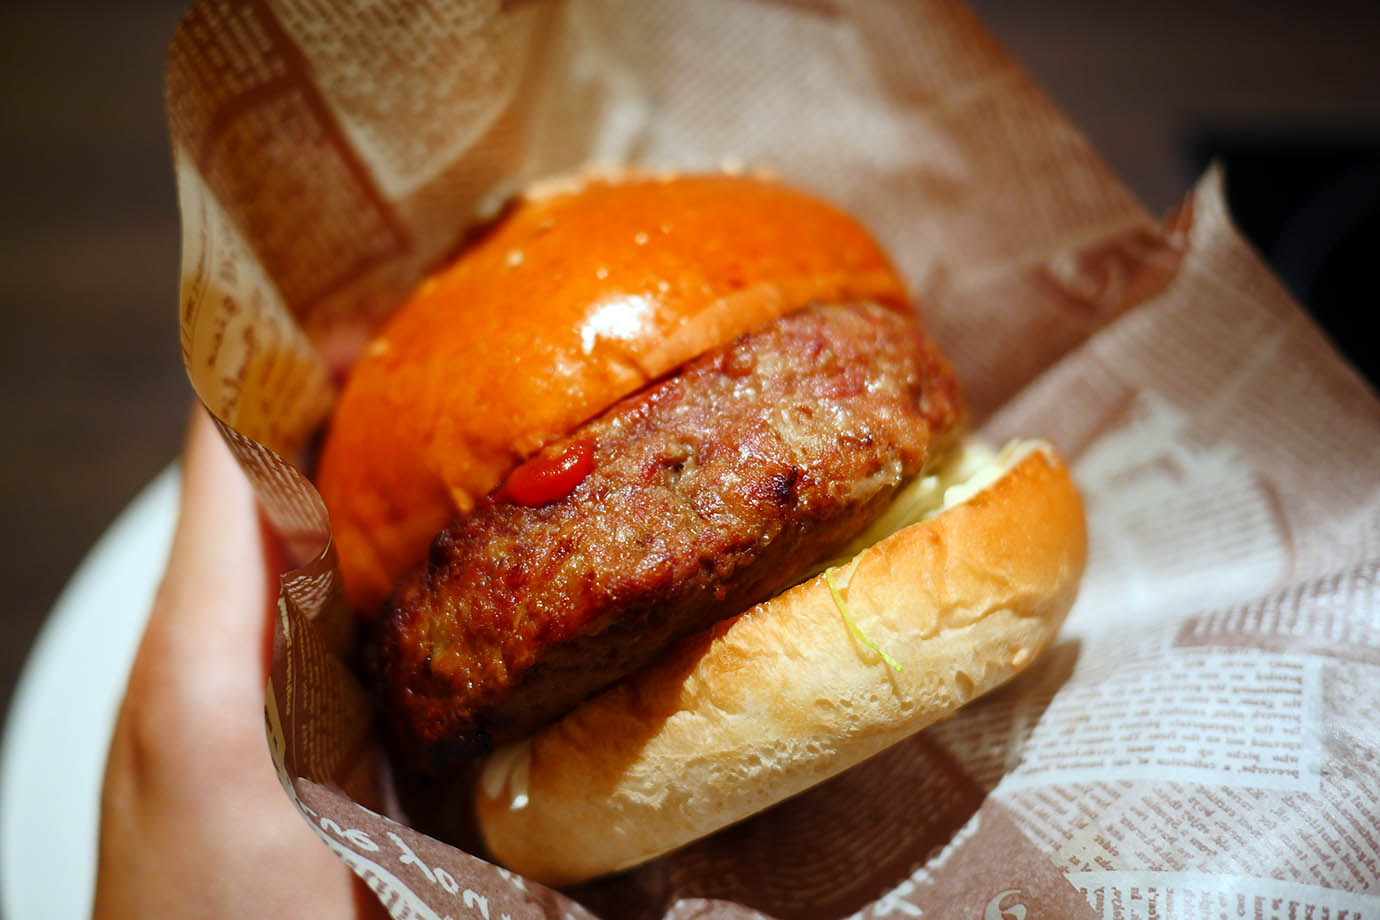 【渋谷でグルメ旅】石垣島の激レアなグルメ東京上陸 / 偏愛食堂で超極厚肉ミルミルハンバーガーを食べる